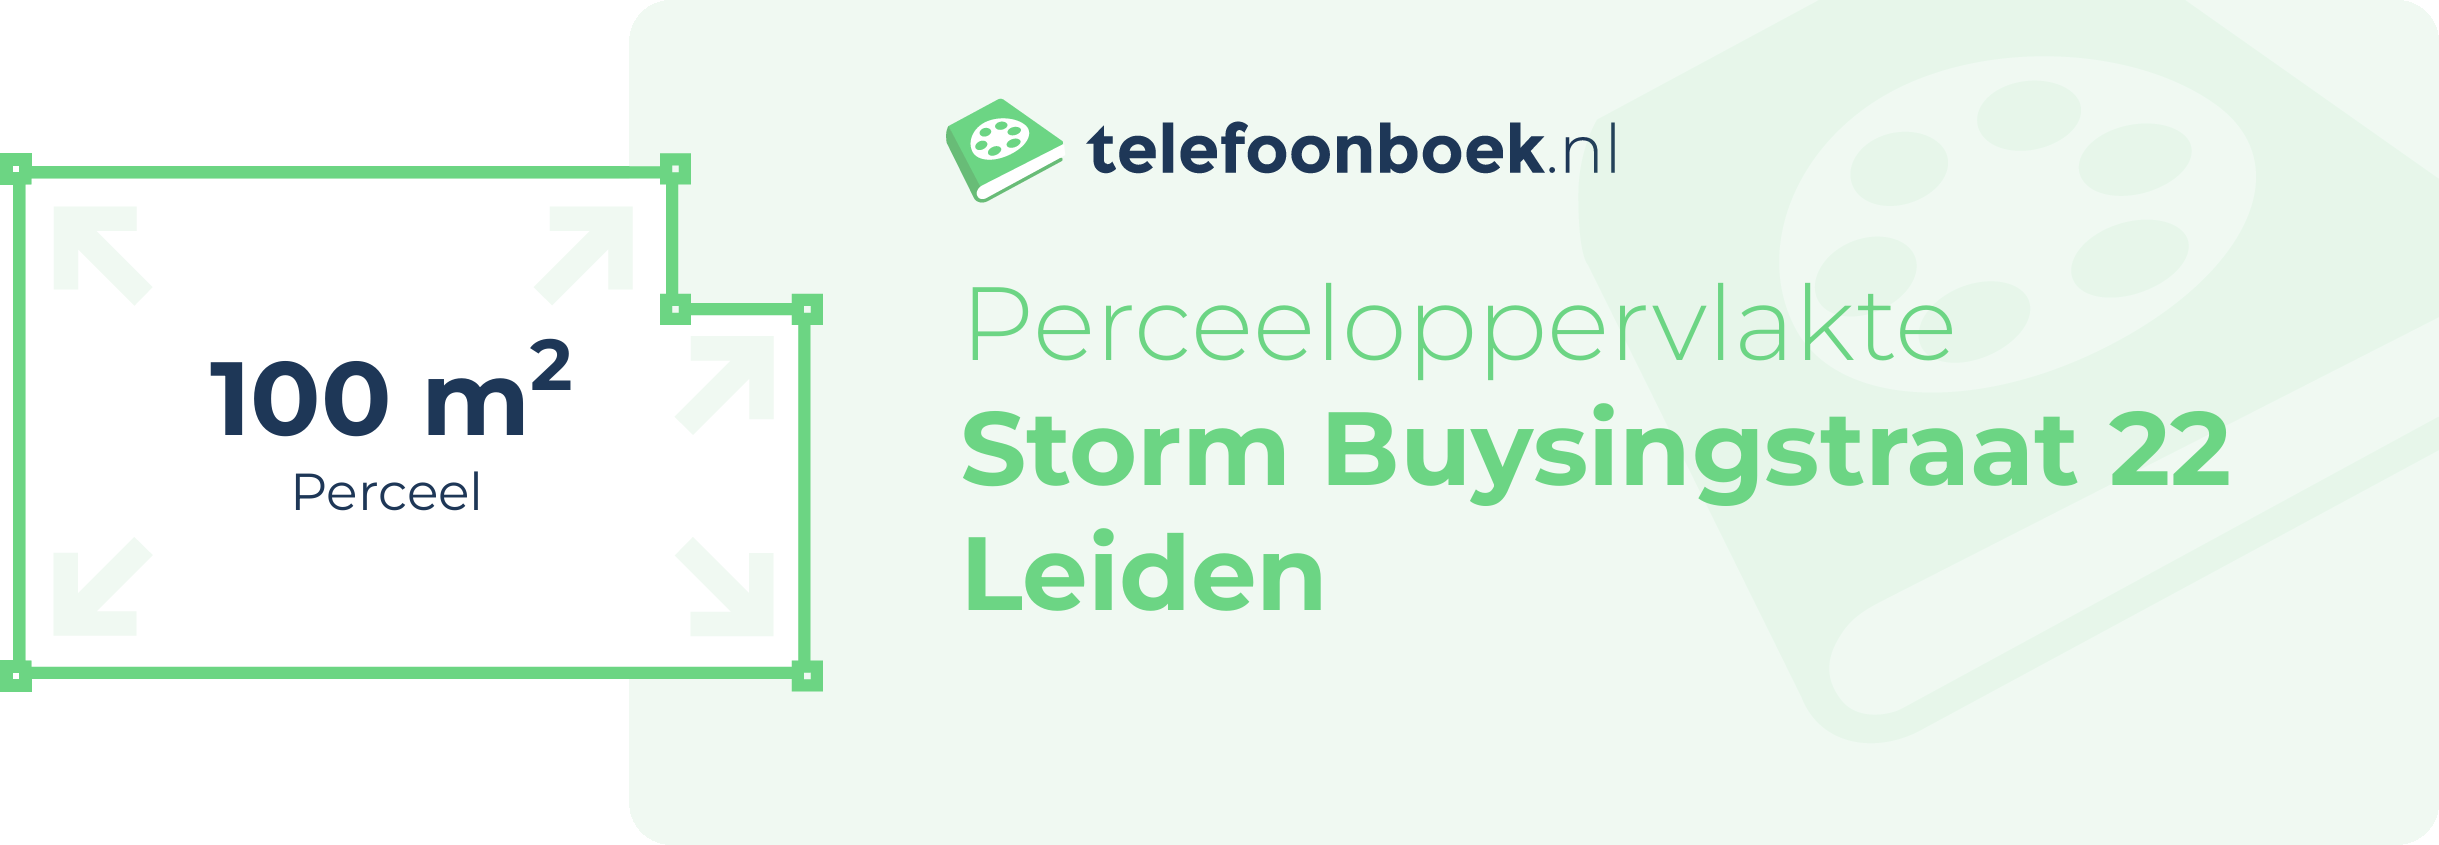 Perceeloppervlakte Storm Buysingstraat 22 Leiden